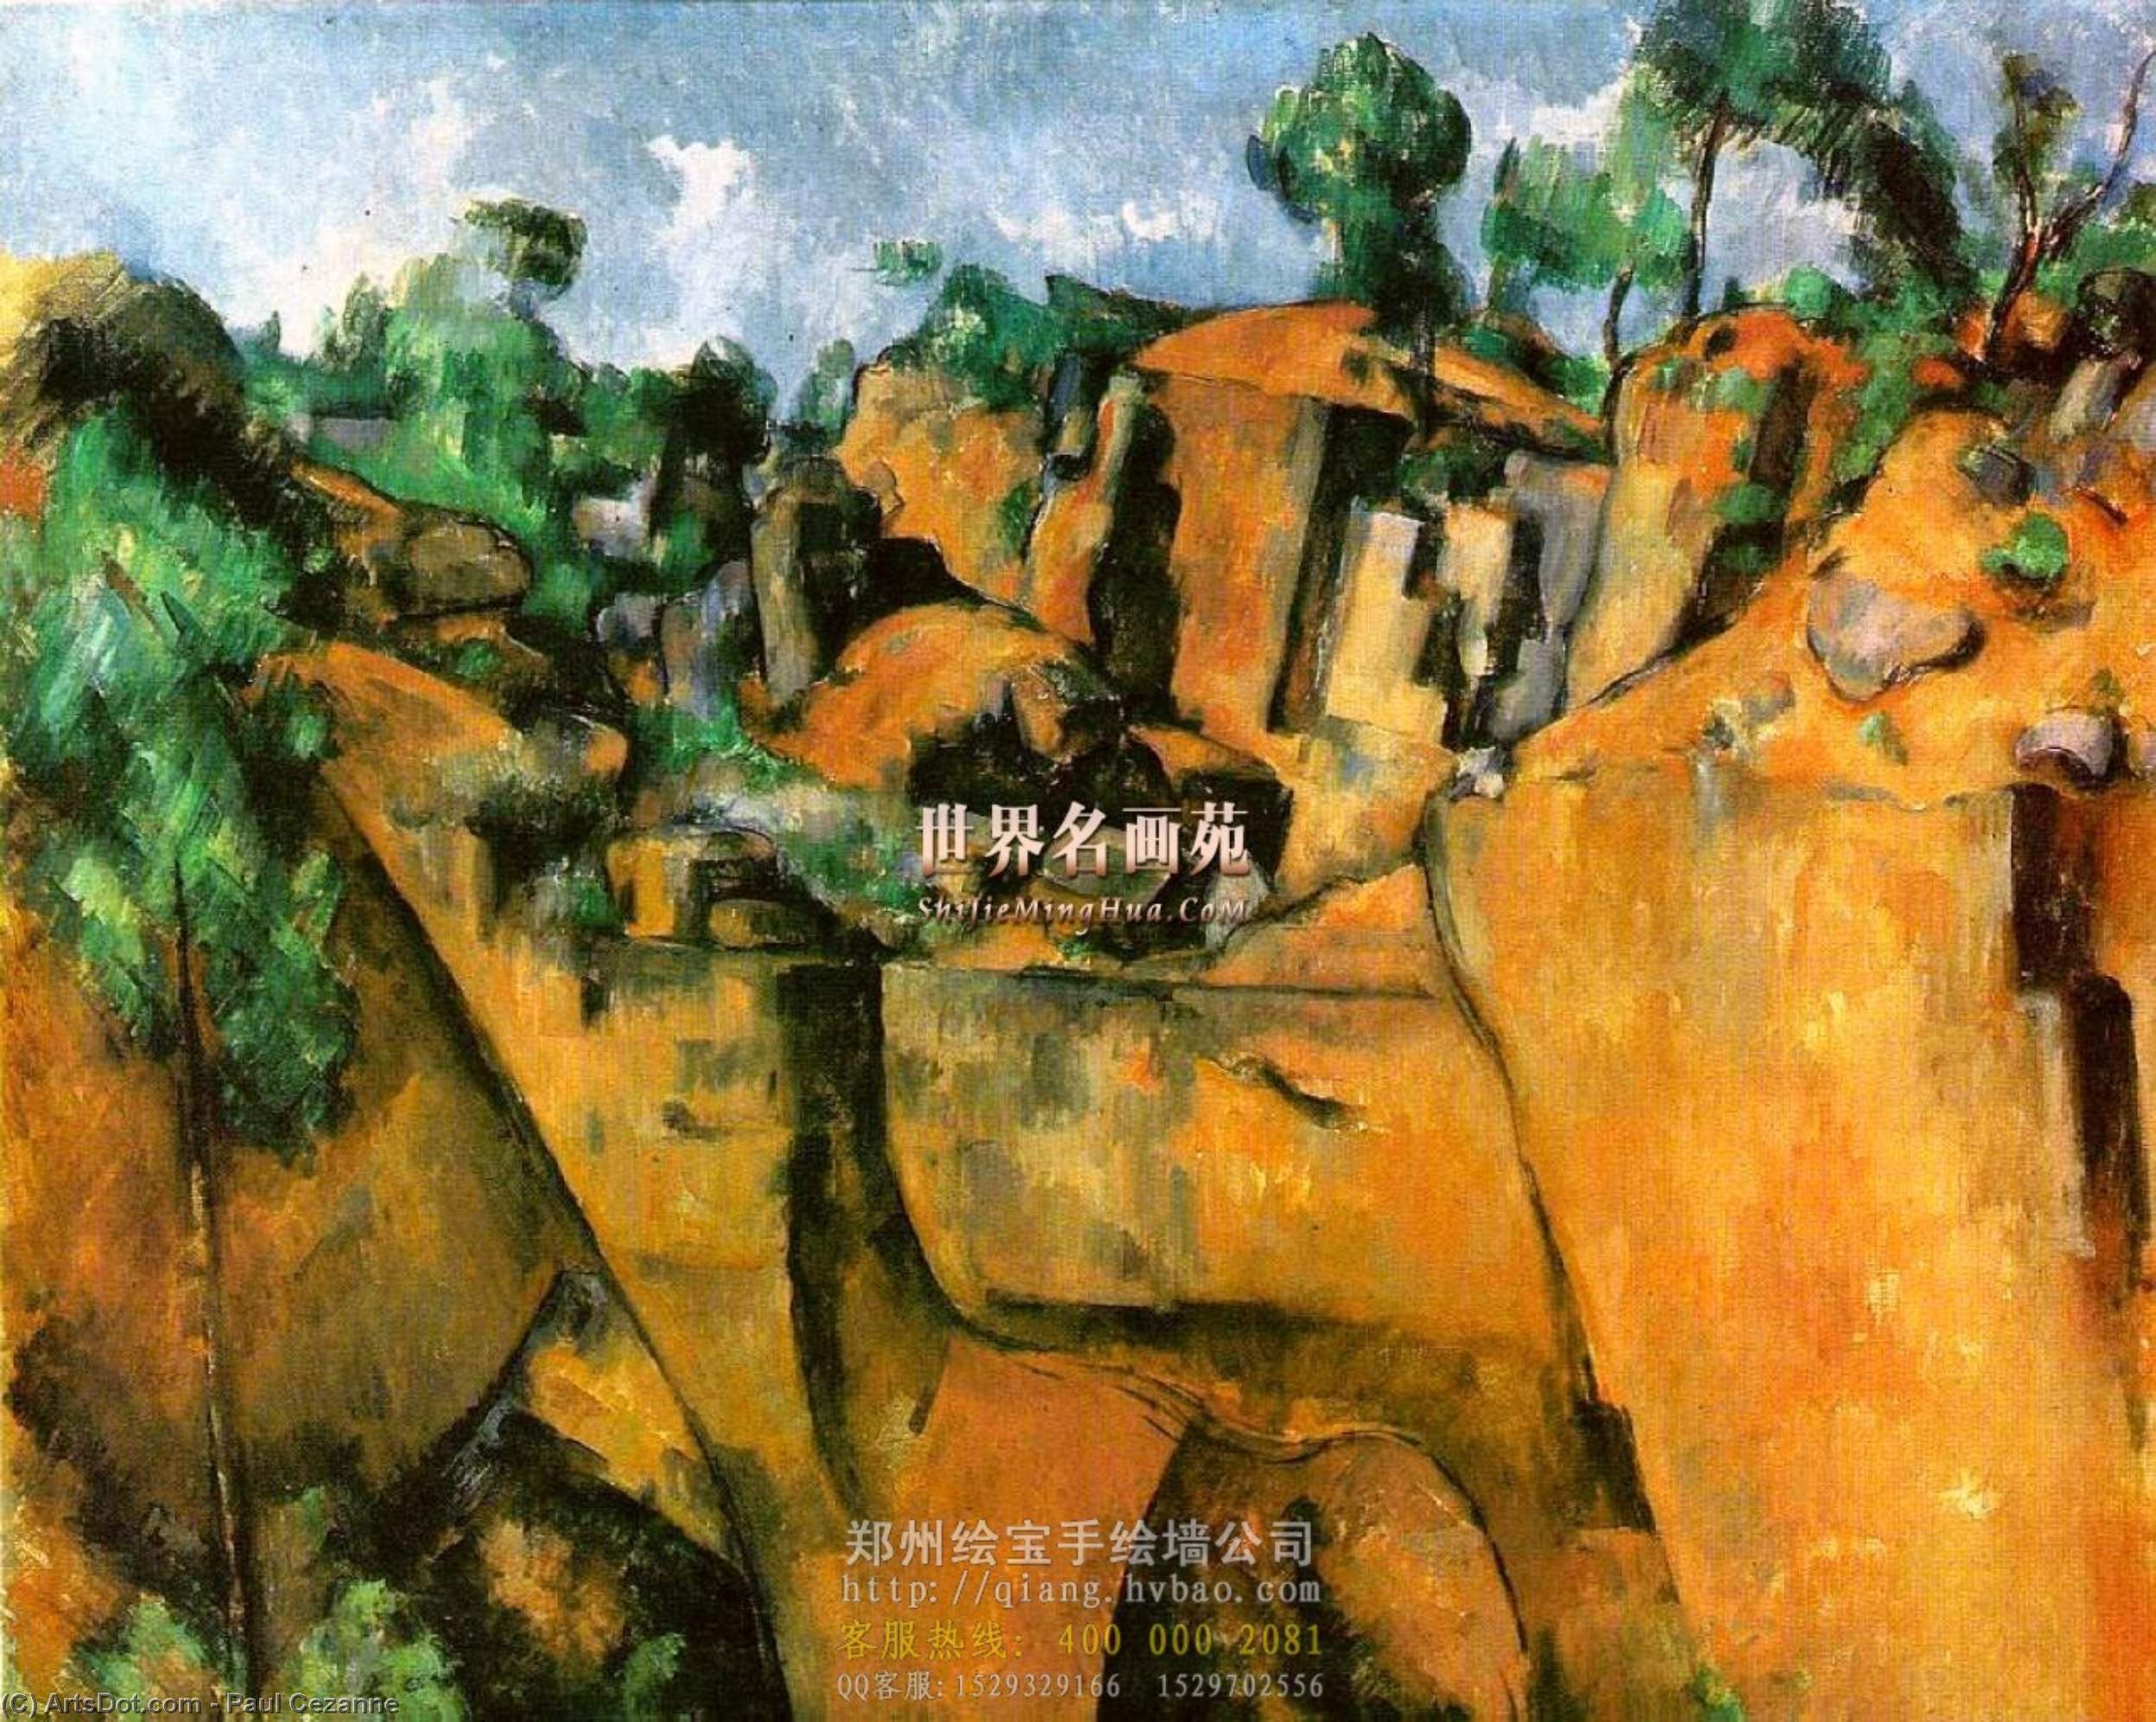 WikiOO.org - Енциклопедія образотворчого мистецтва - Живопис, Картини
 Paul Cezanne - Bibemus Quarry